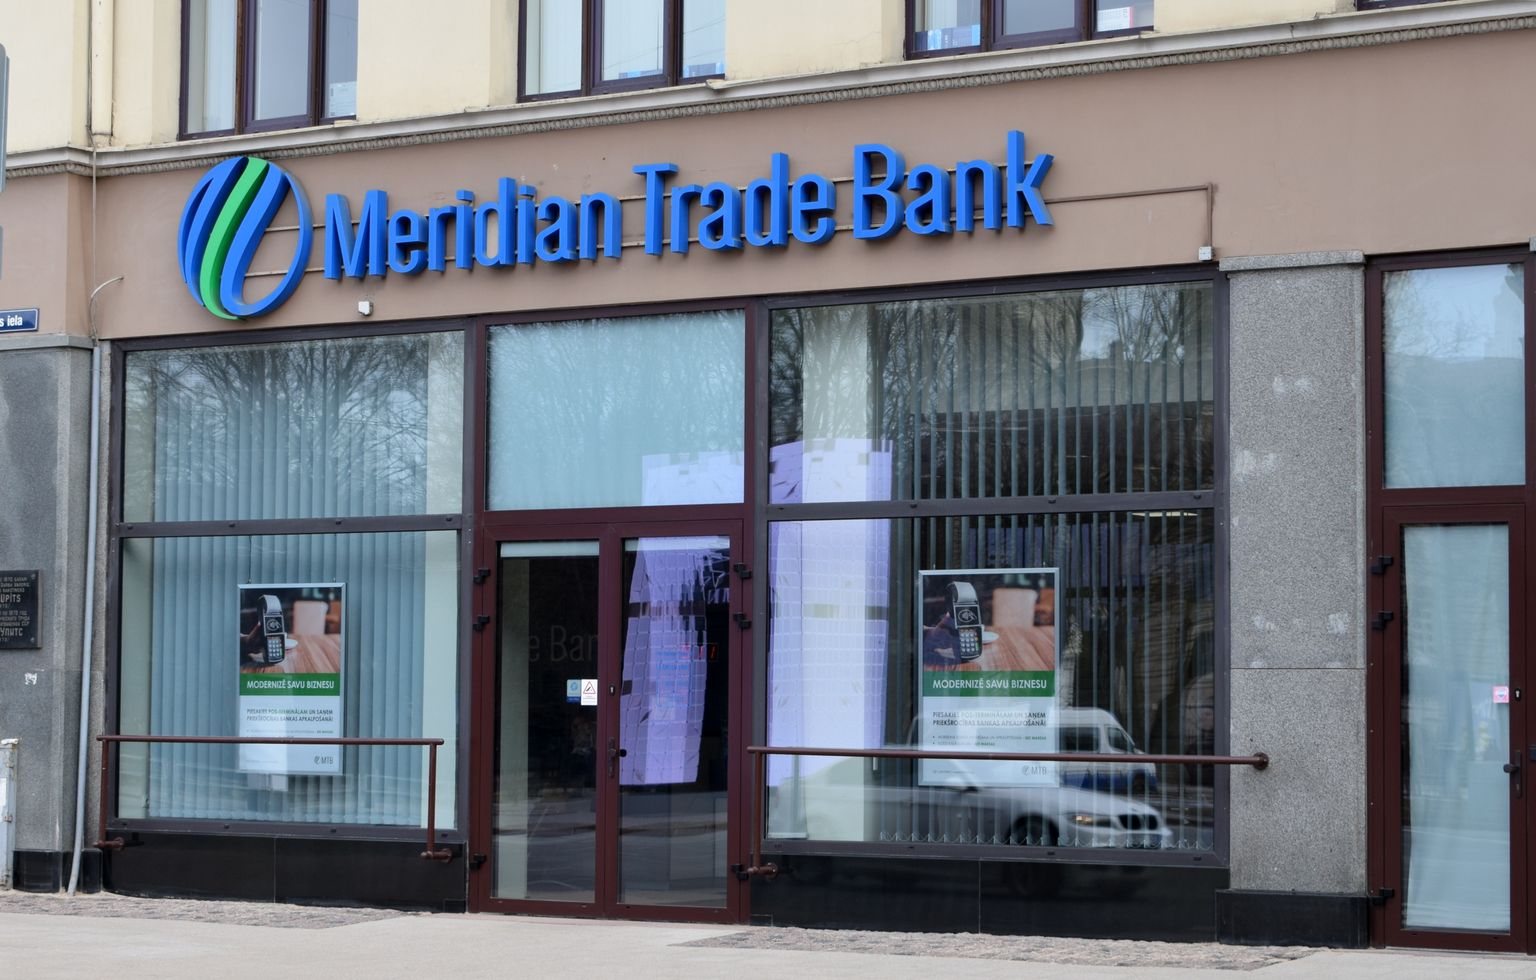 Meridian Trade Bank